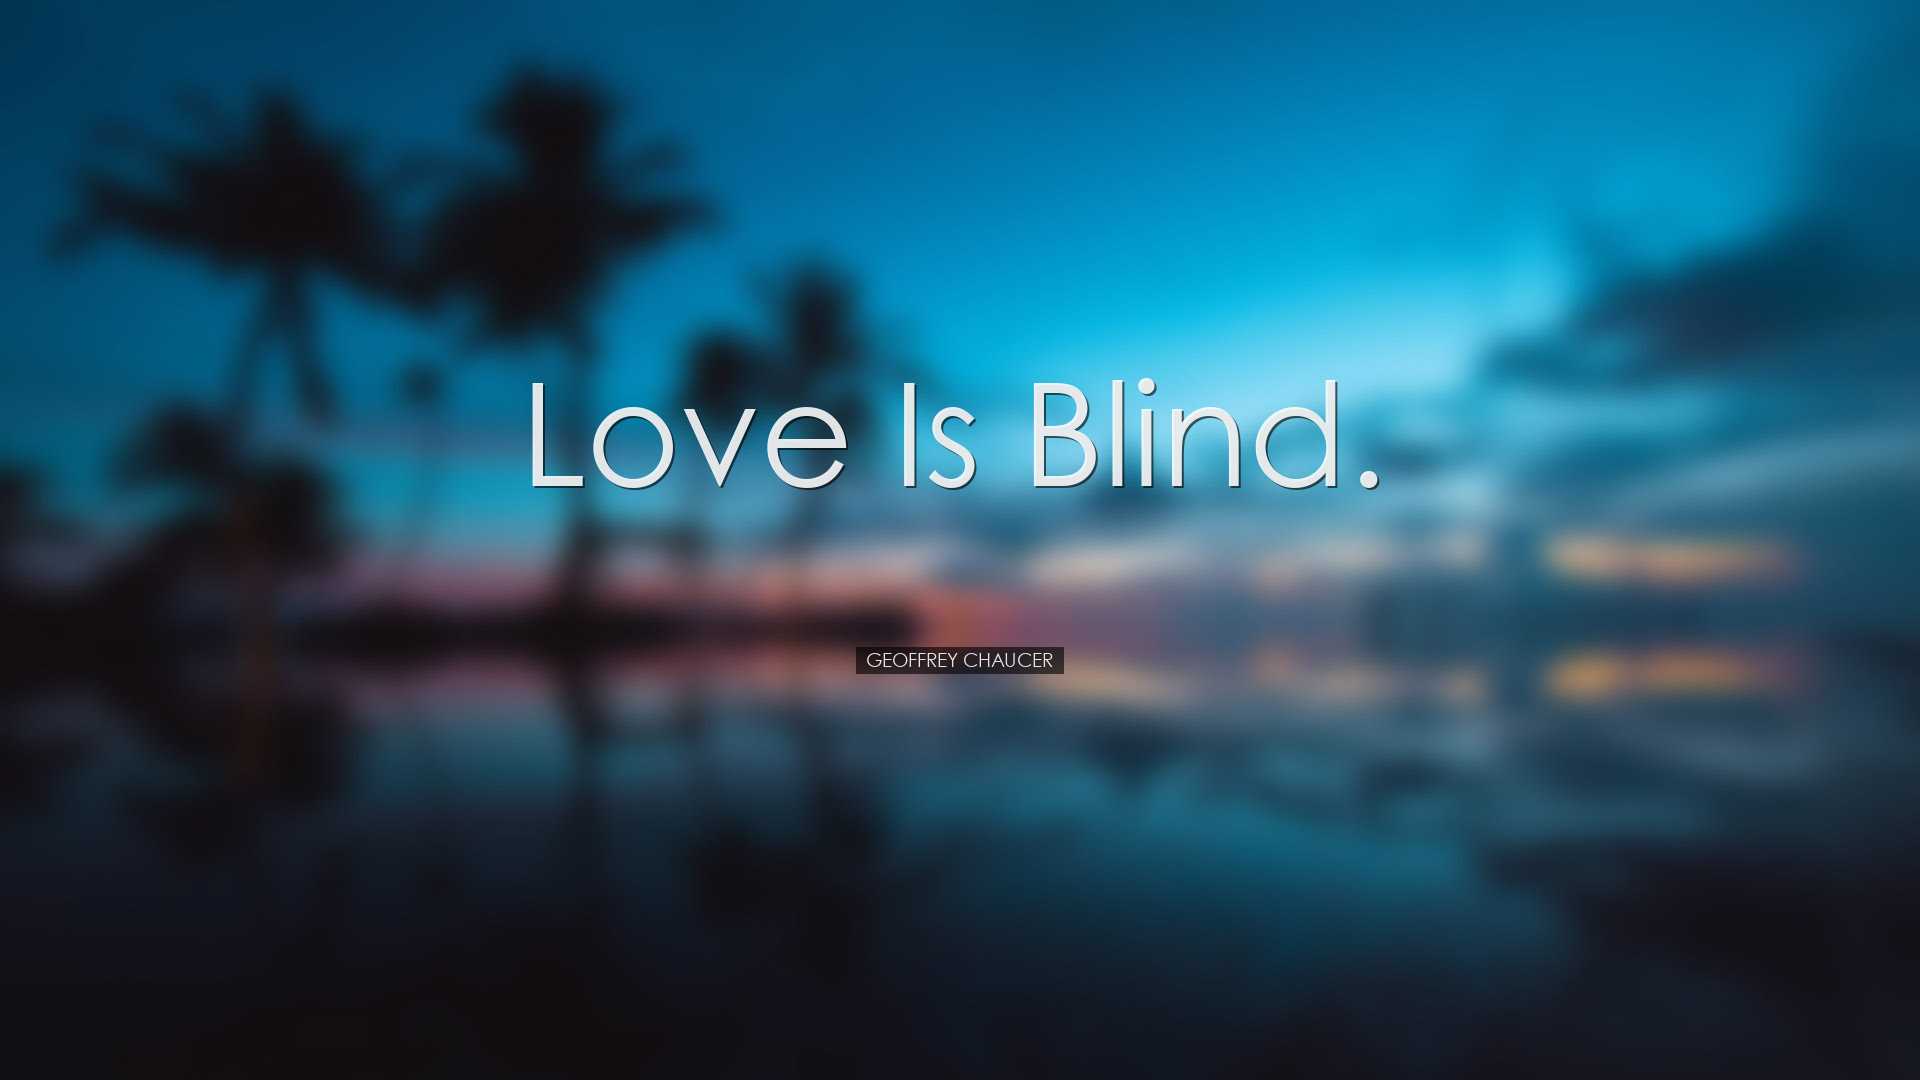 Love is blind. - Geoffrey Chaucer